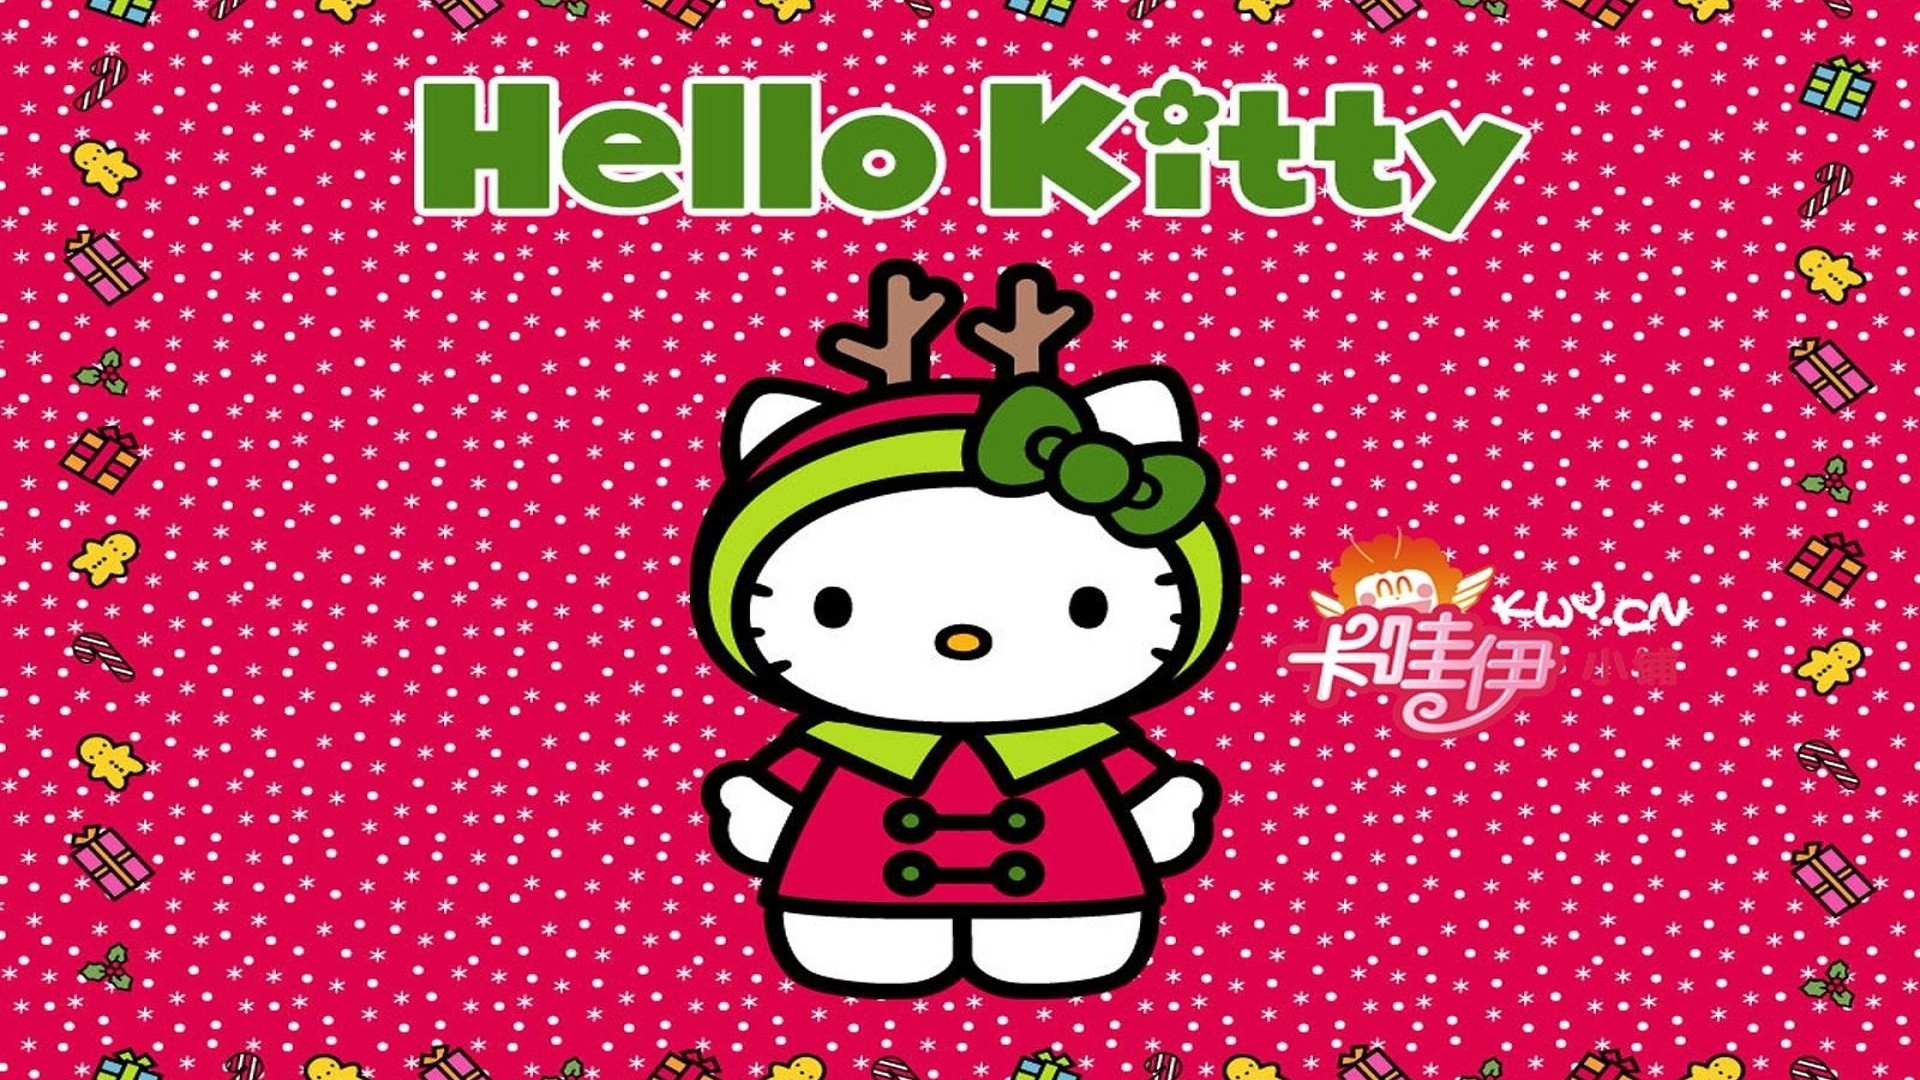 Bạn đang tìm kiếm hình nền Giáng sinh hoàn hảo cho máy tính của mình? Hãy cùng xem qua bộ sưu tập hình nền Giáng sinh Hello Kitty đặc sắc của chúng tôi! Với nhiều mẫu mã đáng yêu và dễ thương, chỉ cần một cái nhấp chuột, bạn đã có thể sở hữu một hình nền hoàn hảo cho mùa lễ hội.